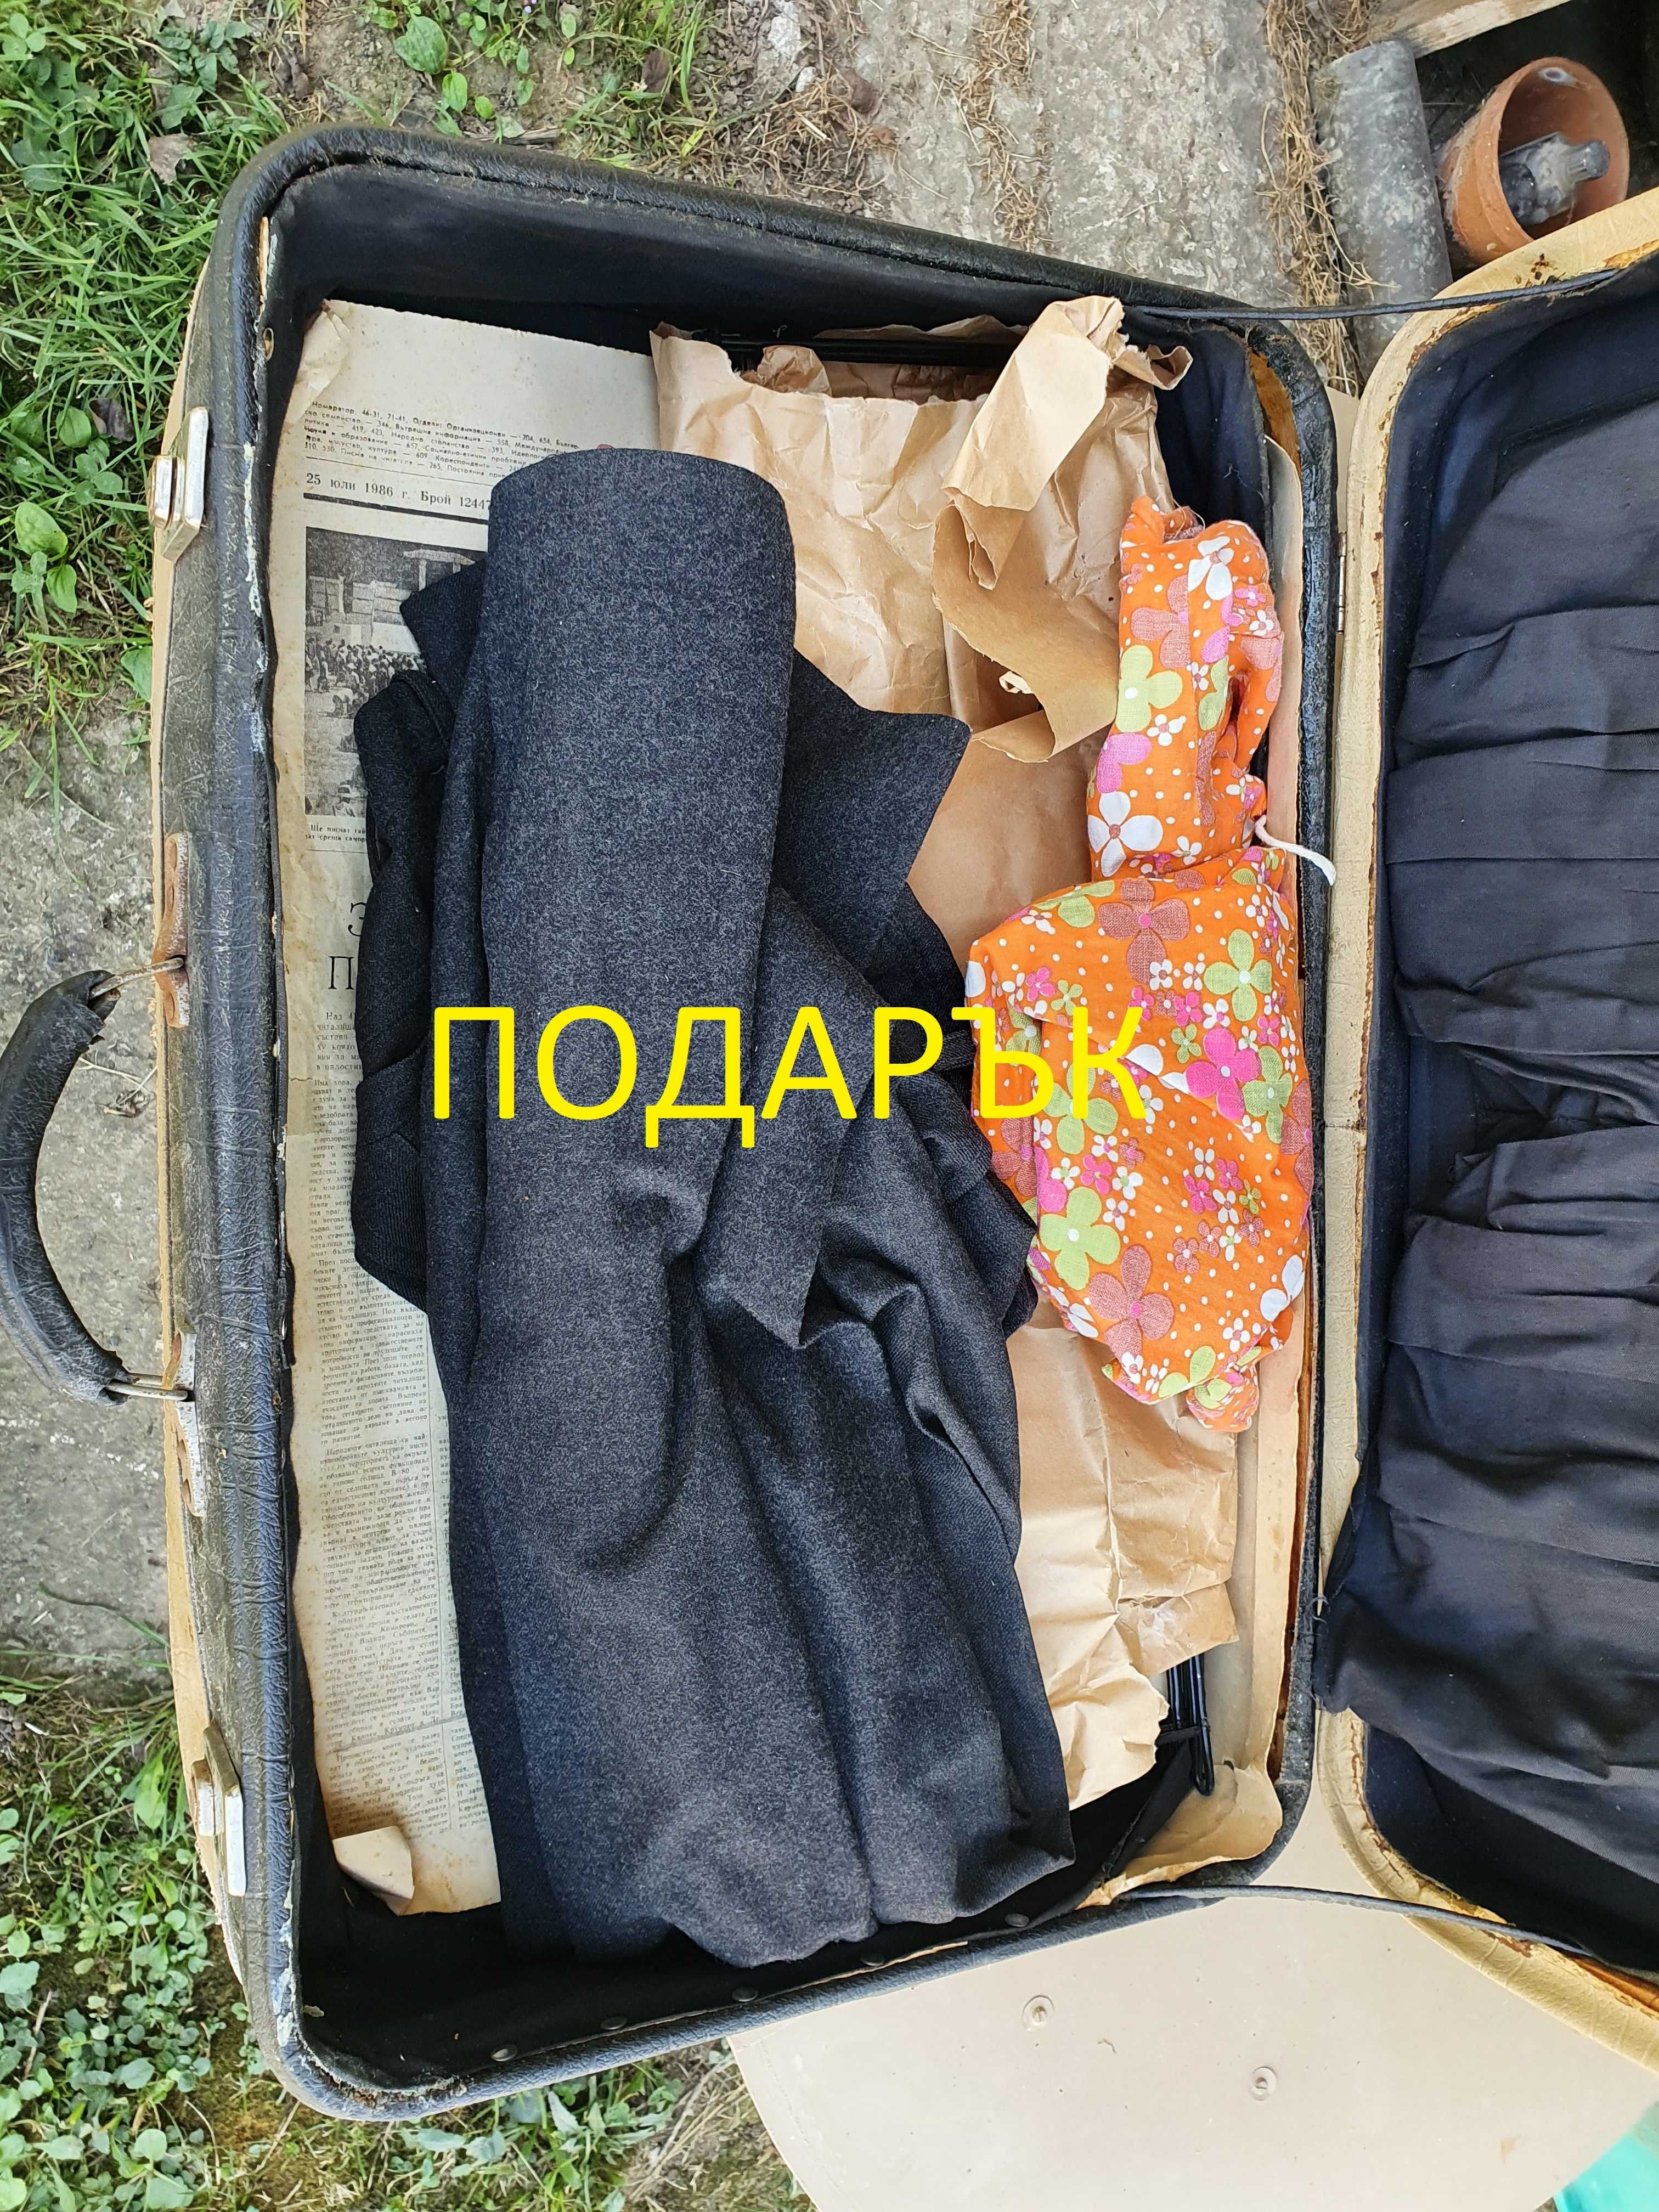 Немски ретро туристически куфар (за пътуване) с колелца, втори подарък